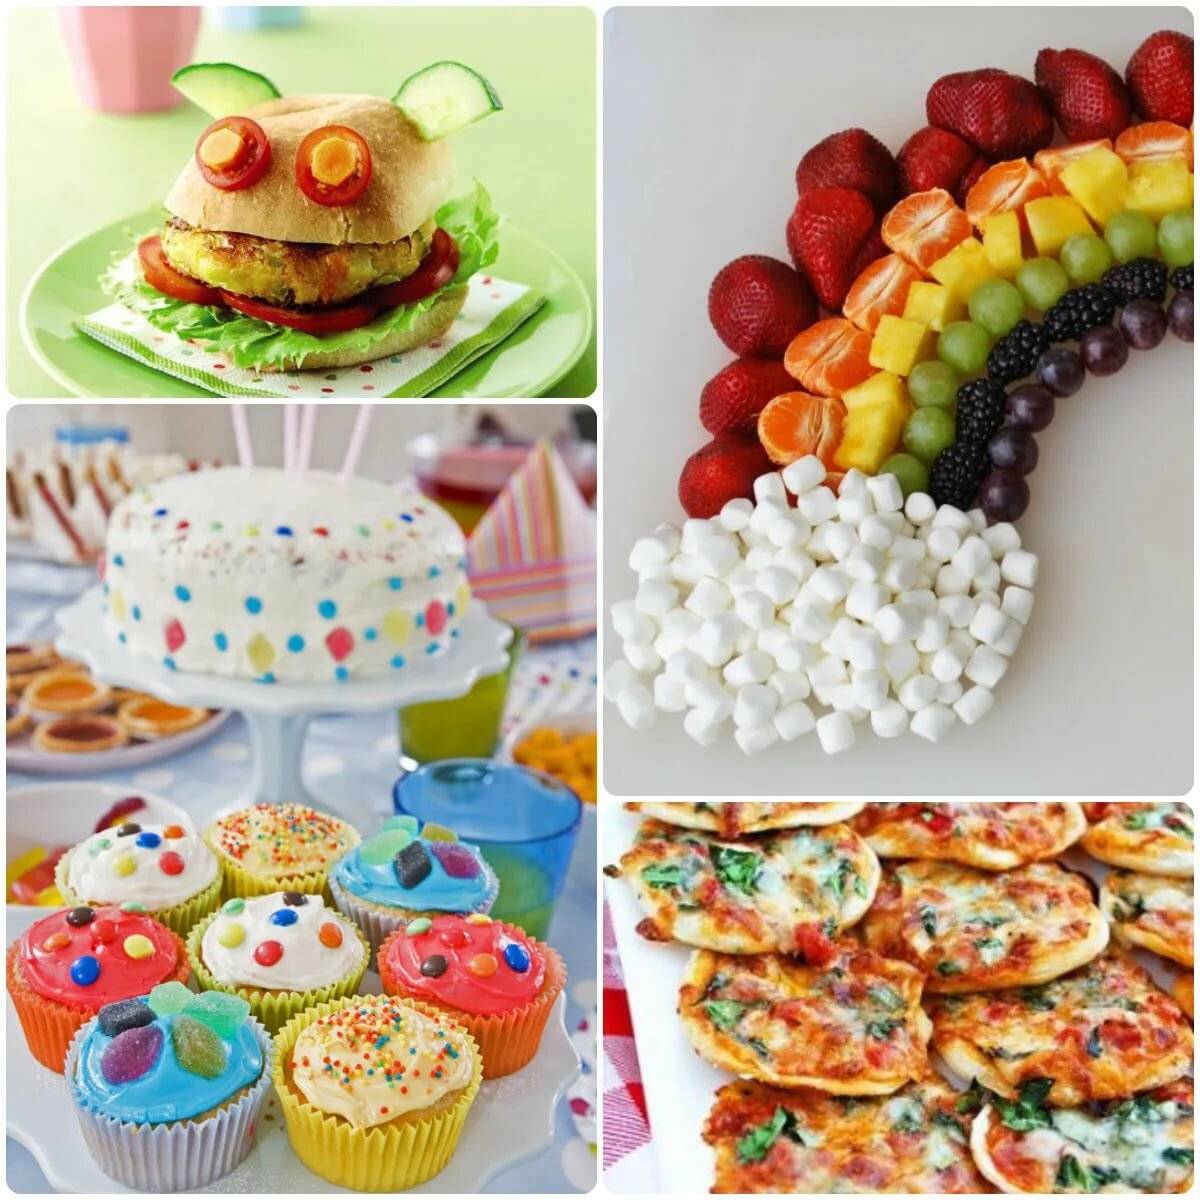 Что приготовить на детский день рождения: меню, рецепты, сервировка сладкого стола +фото и видео